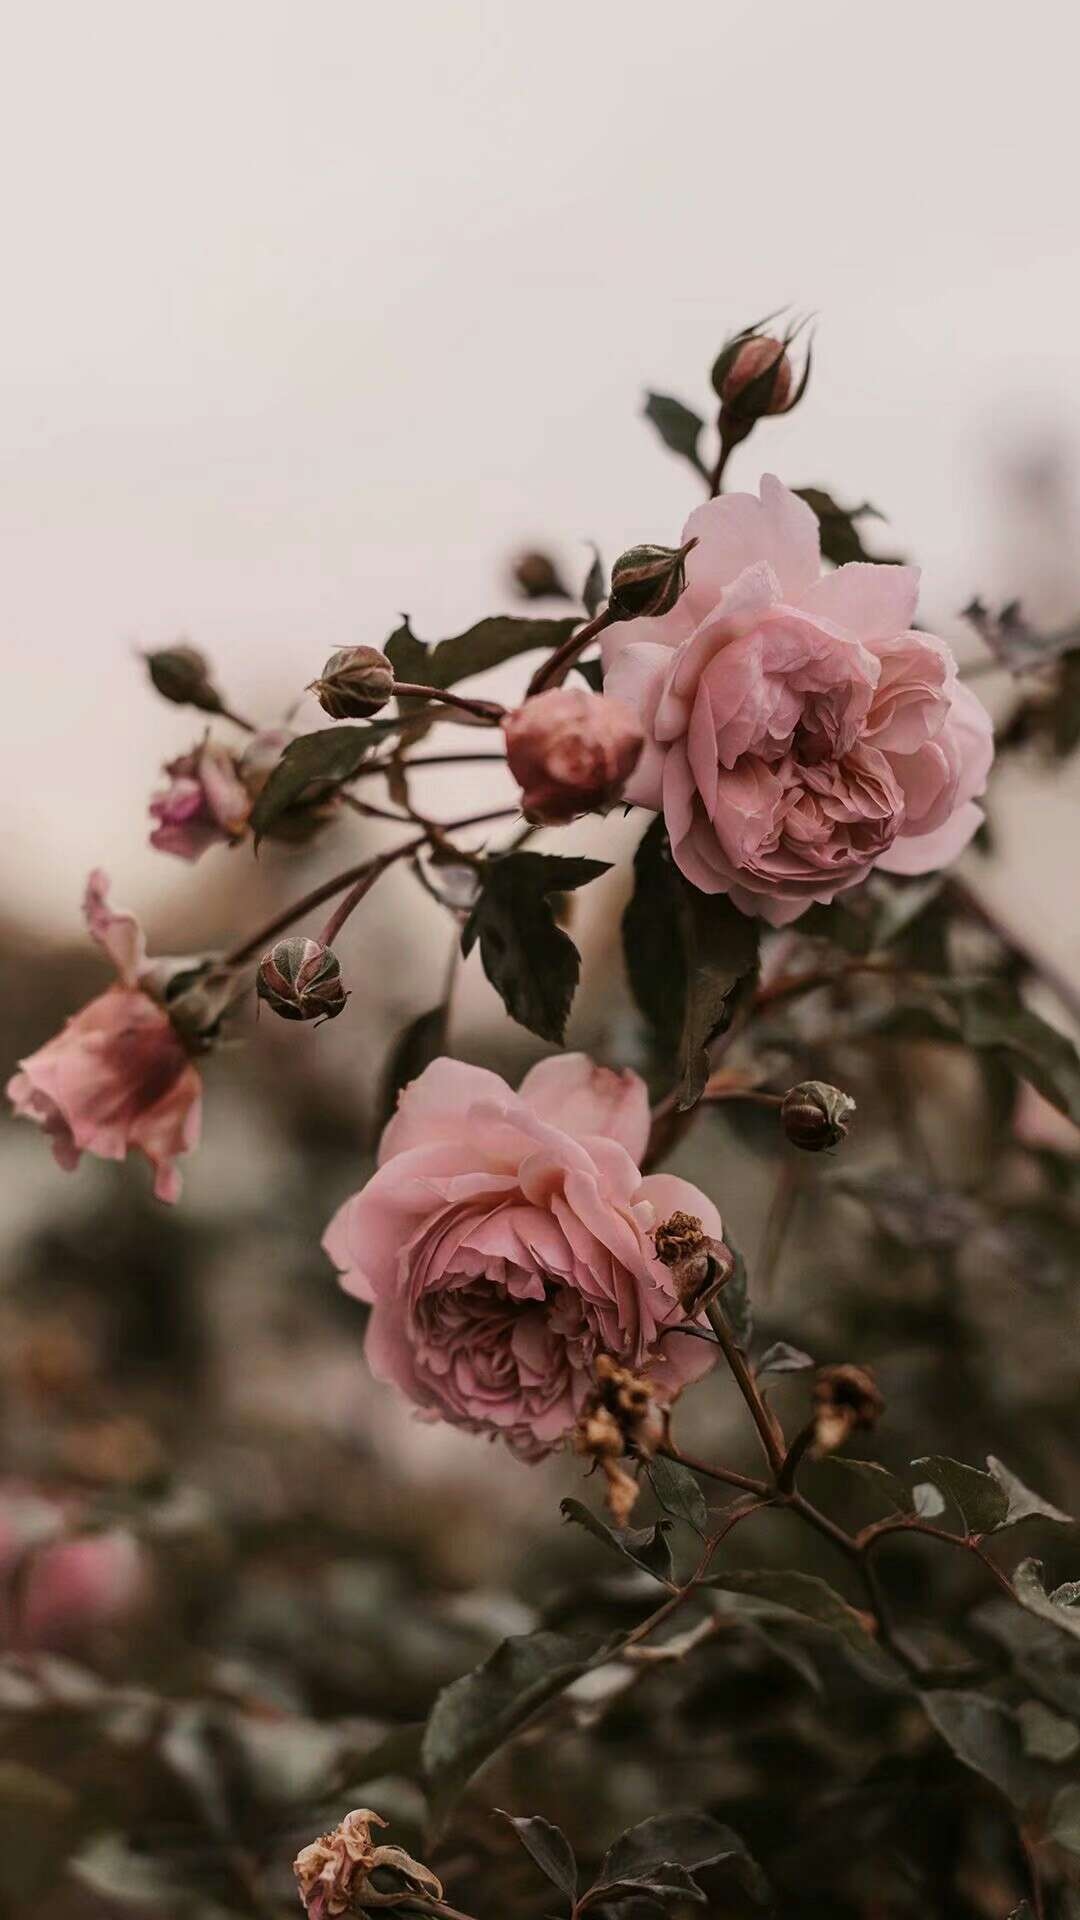 蔷薇 风景静物手机壁纸 我要个性网